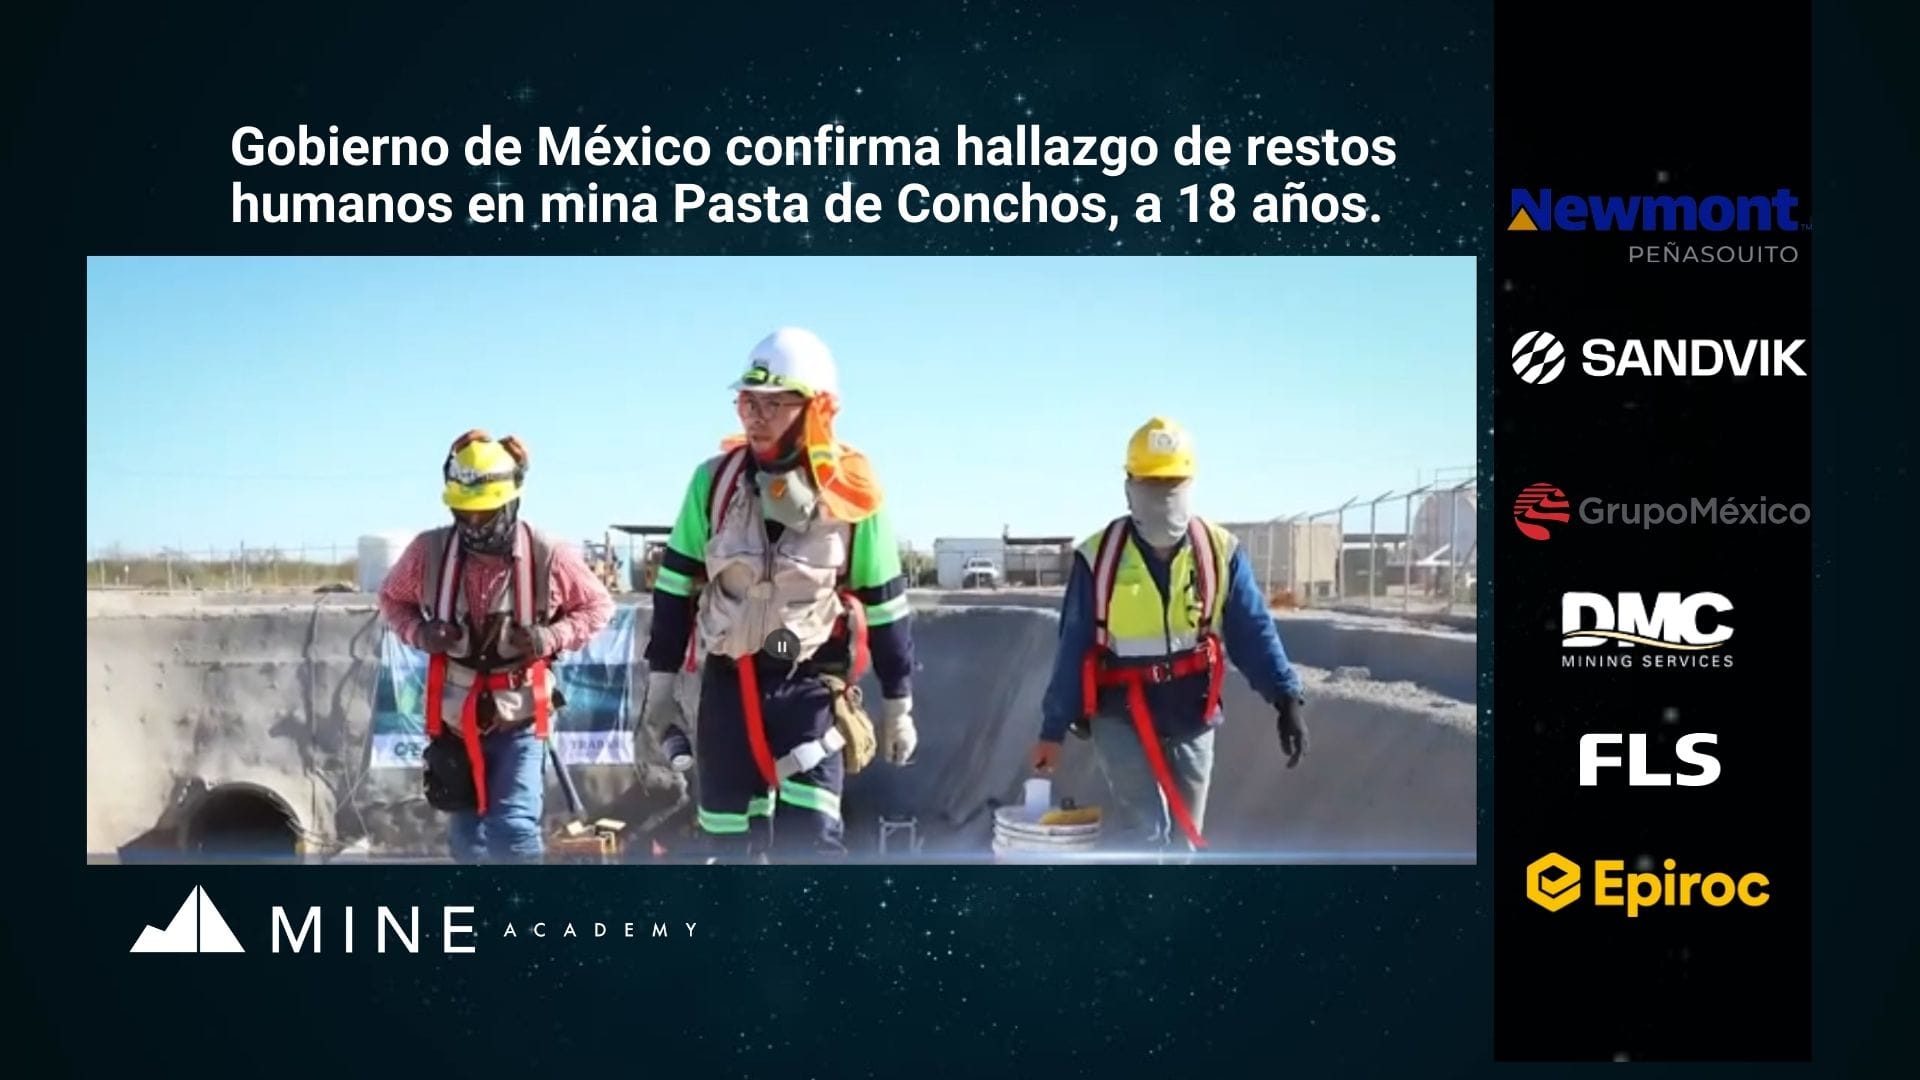 Noticias mineras del 13 de junio y cápsula presentadas por Minera Cuzcatlán.